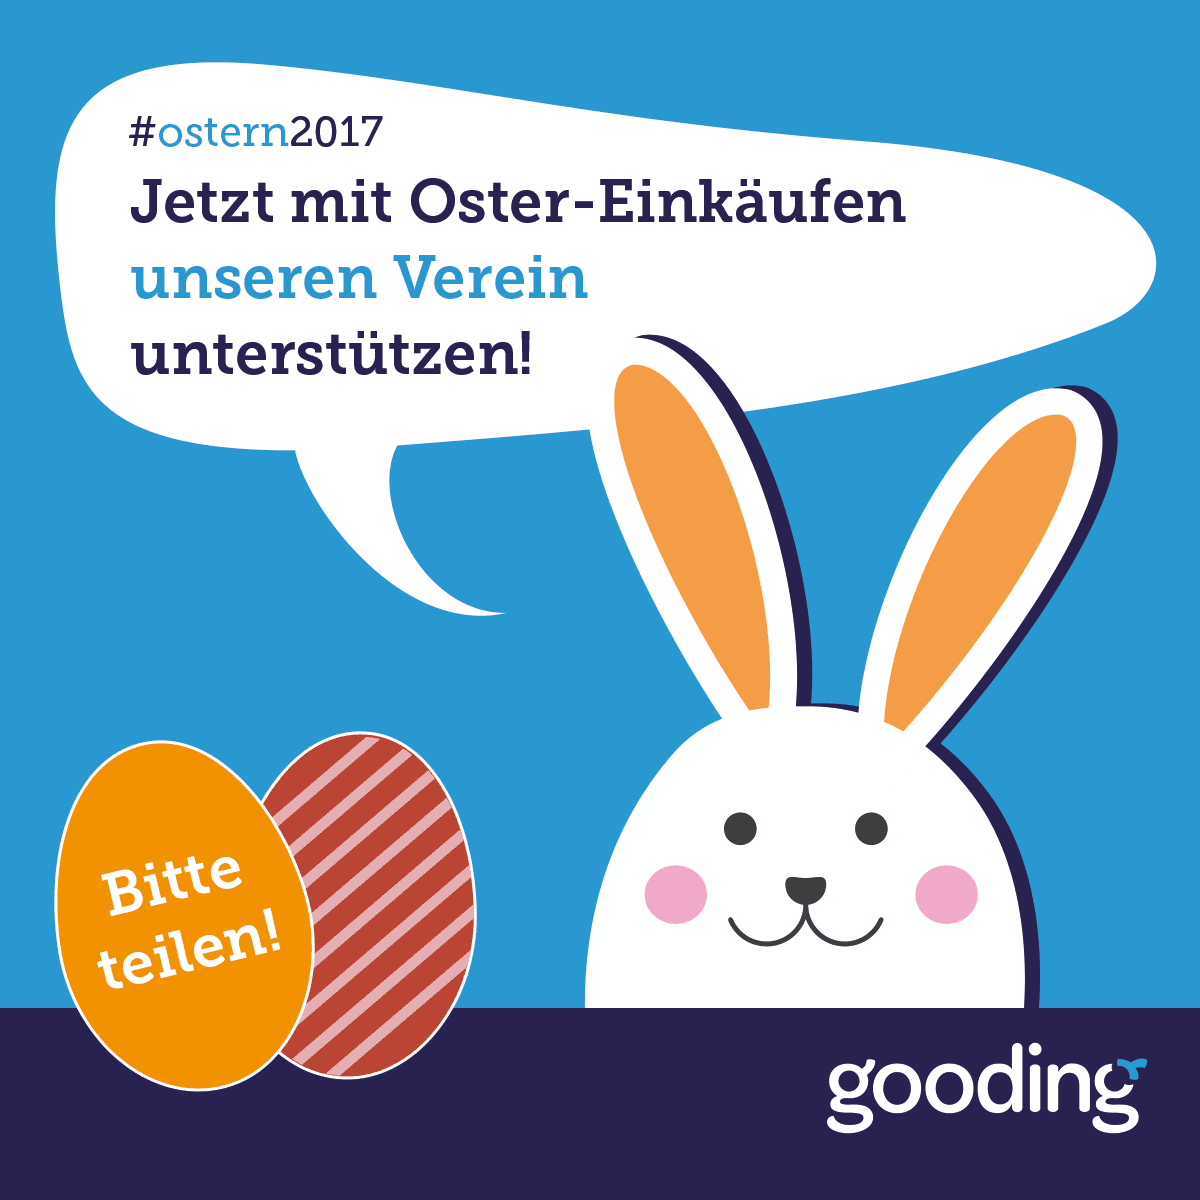 Die 
ÖFS über Gooding-Einkäufe an Ostern unterstützen!